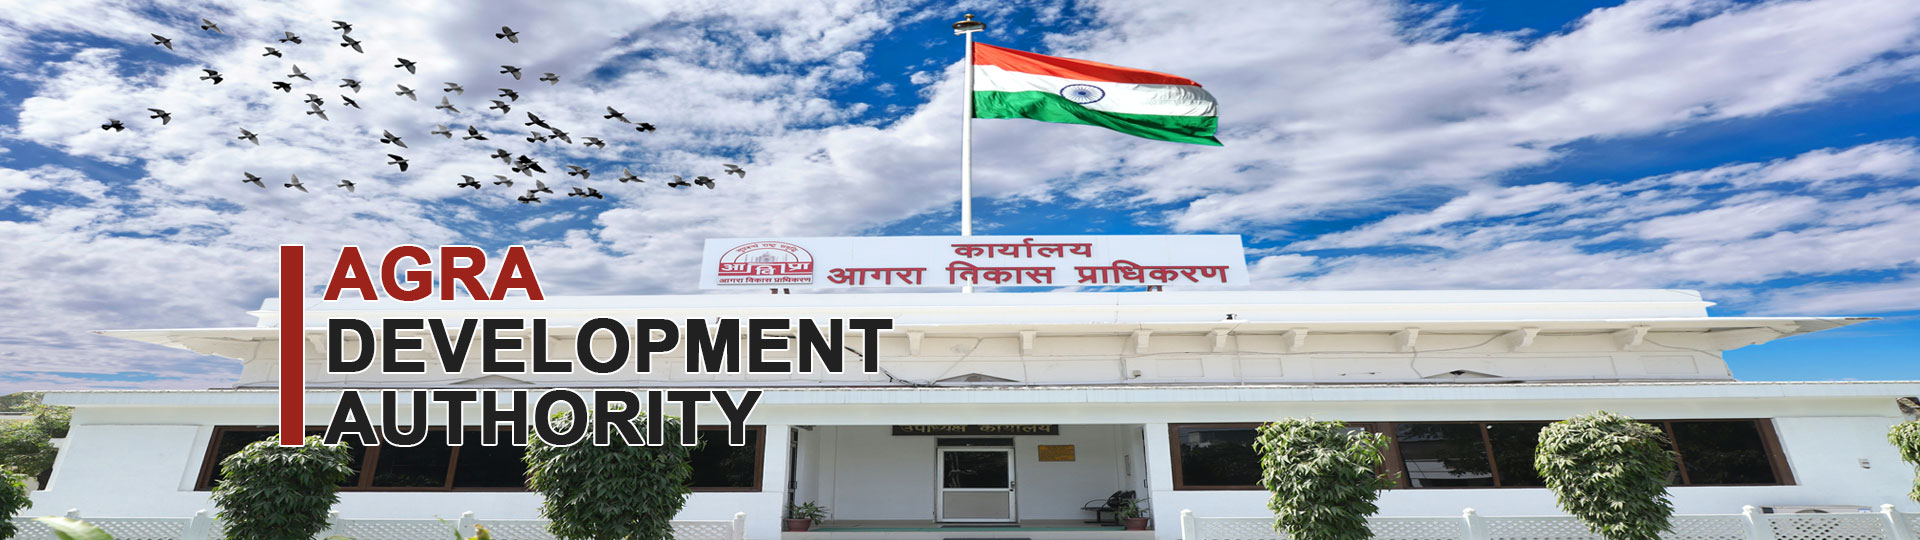 Agra Development Authority New